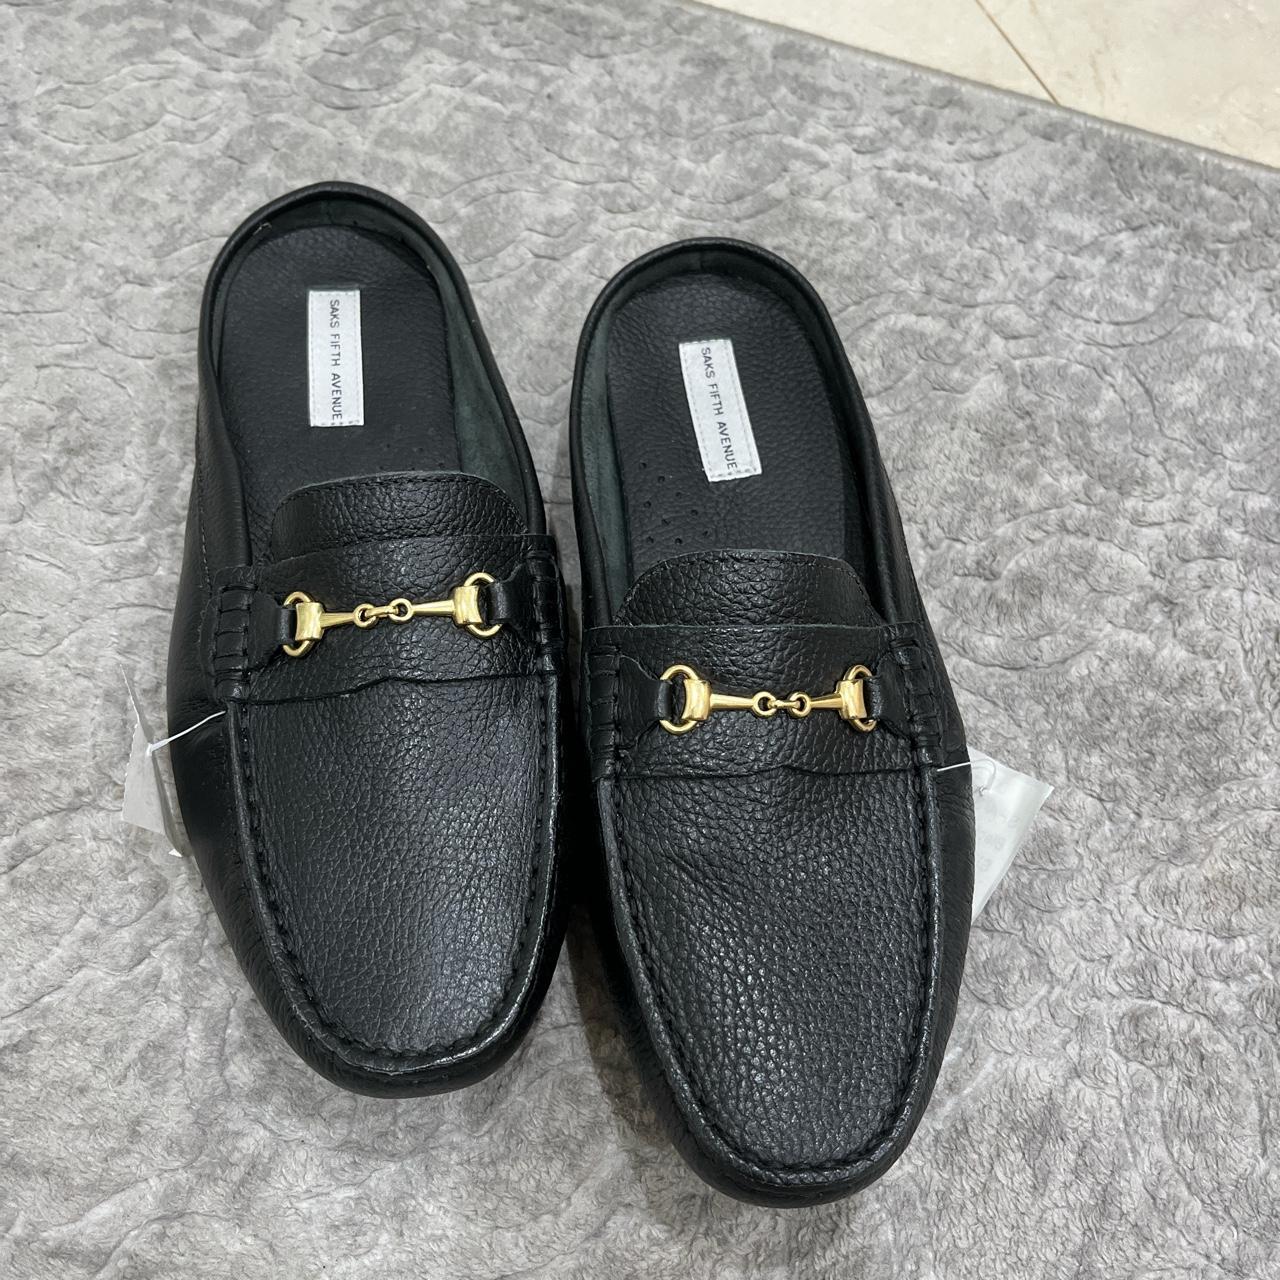 A. Saks Men's Black Loafers